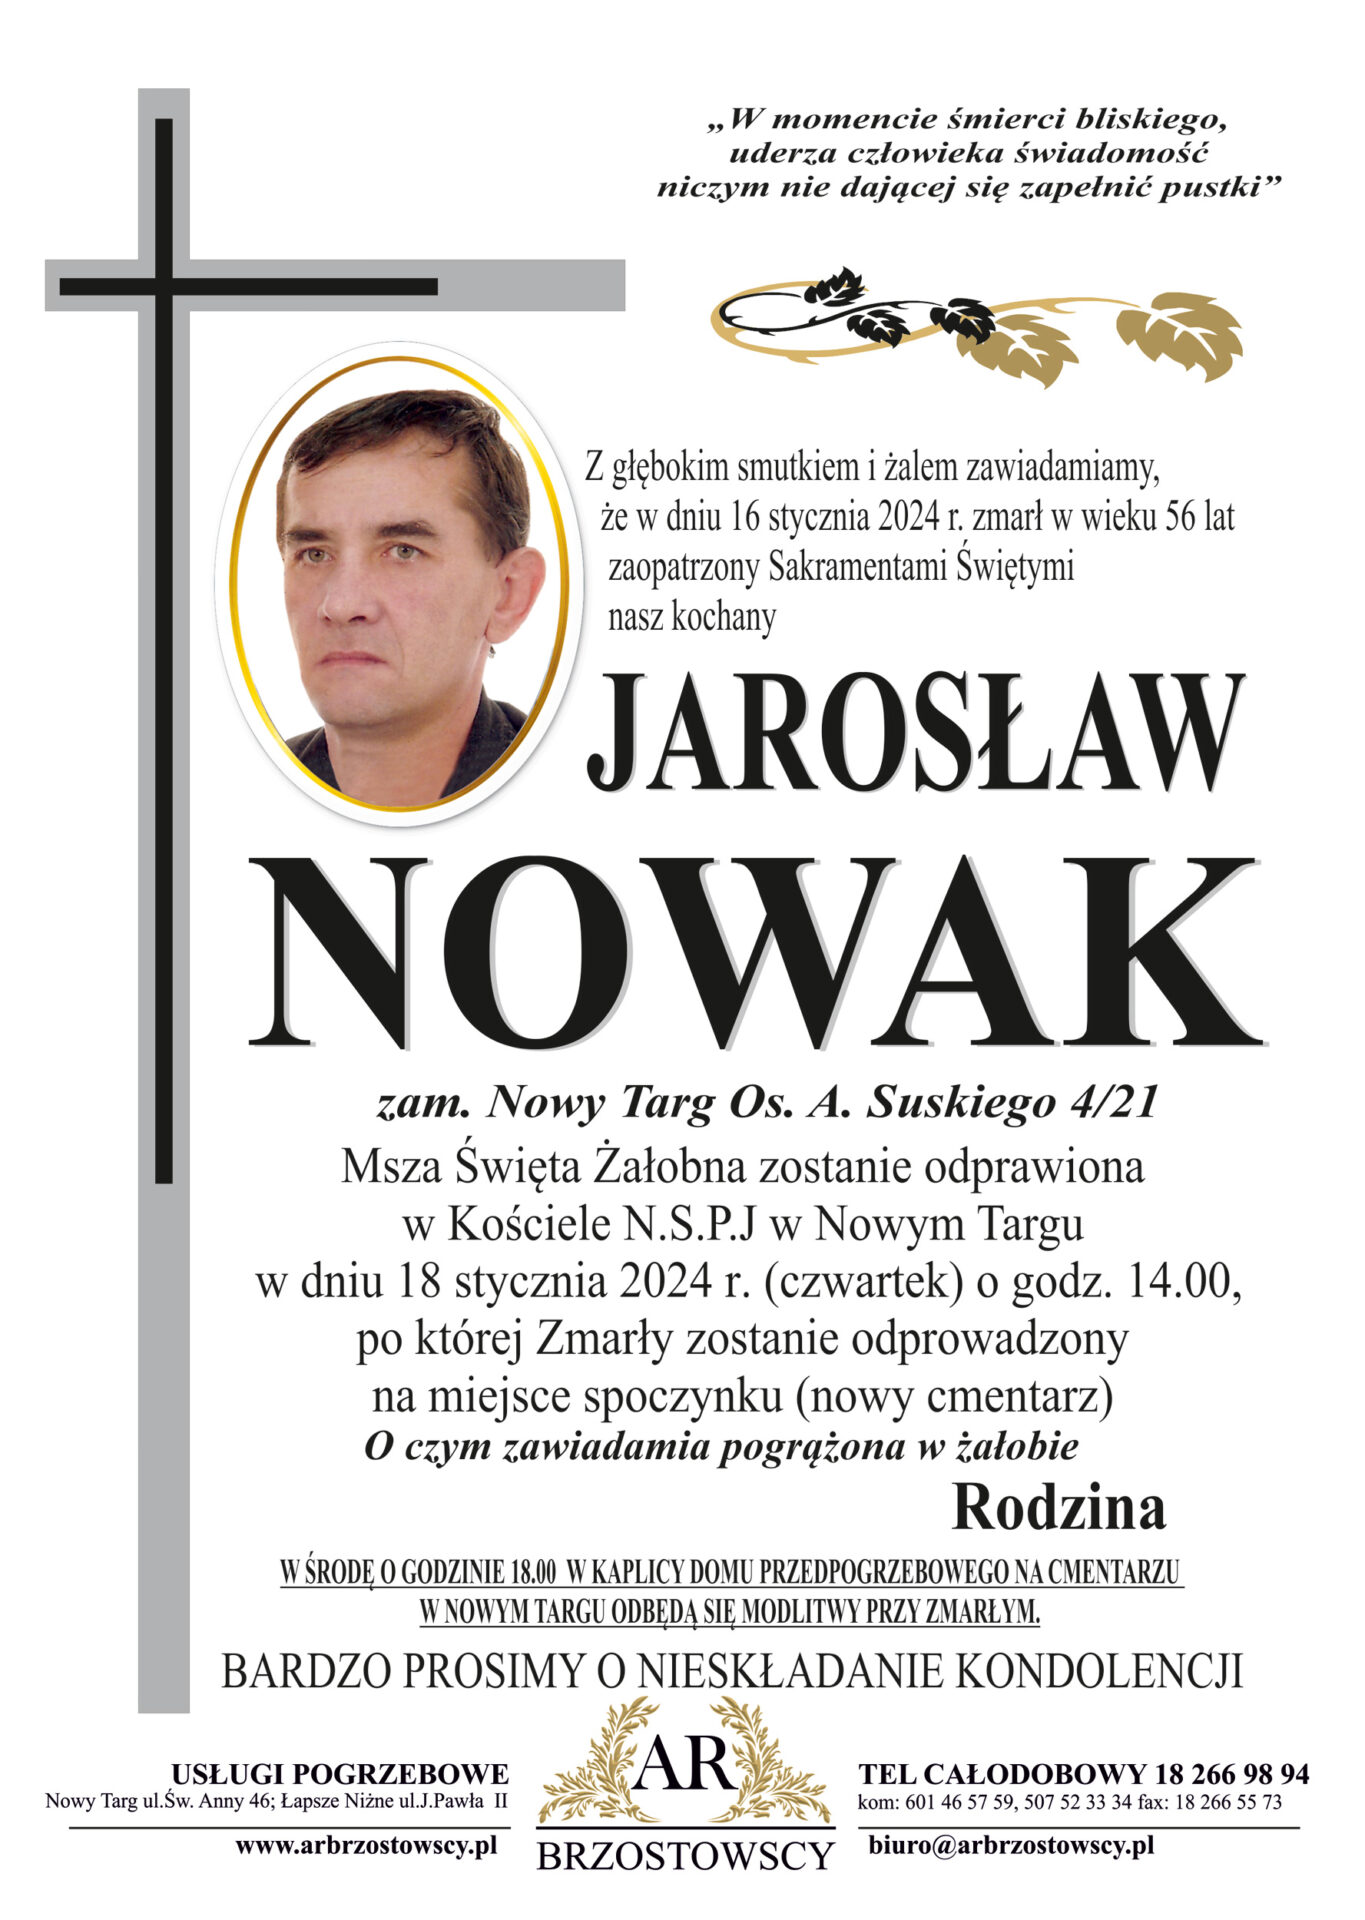 Jarosław Nowak